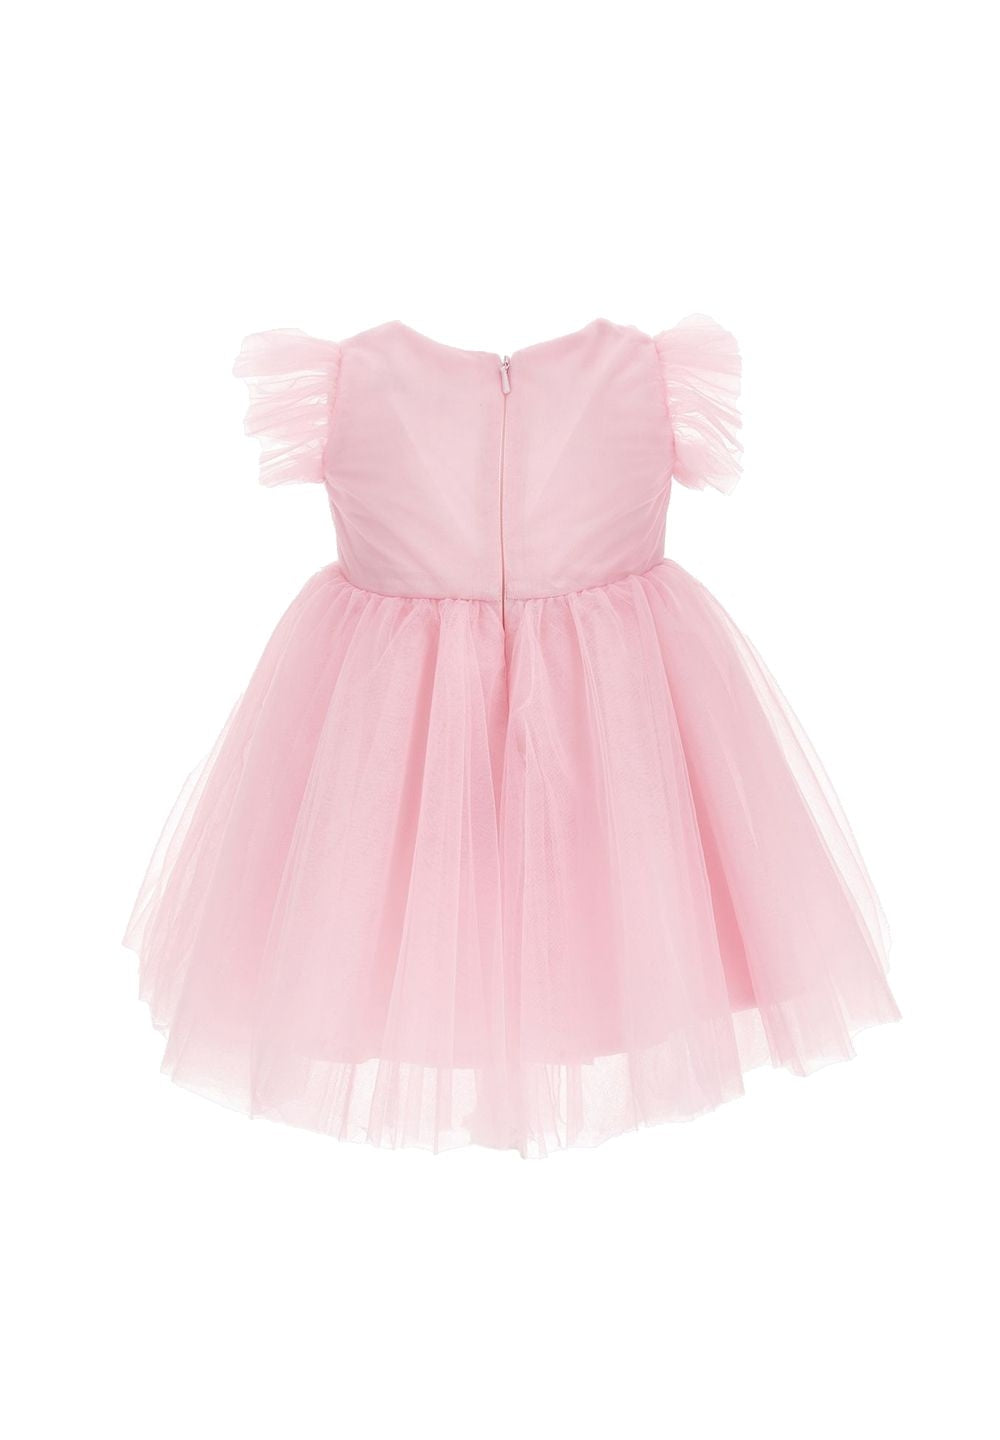 Vestito tulle rosa per neonata - Primamoda kids